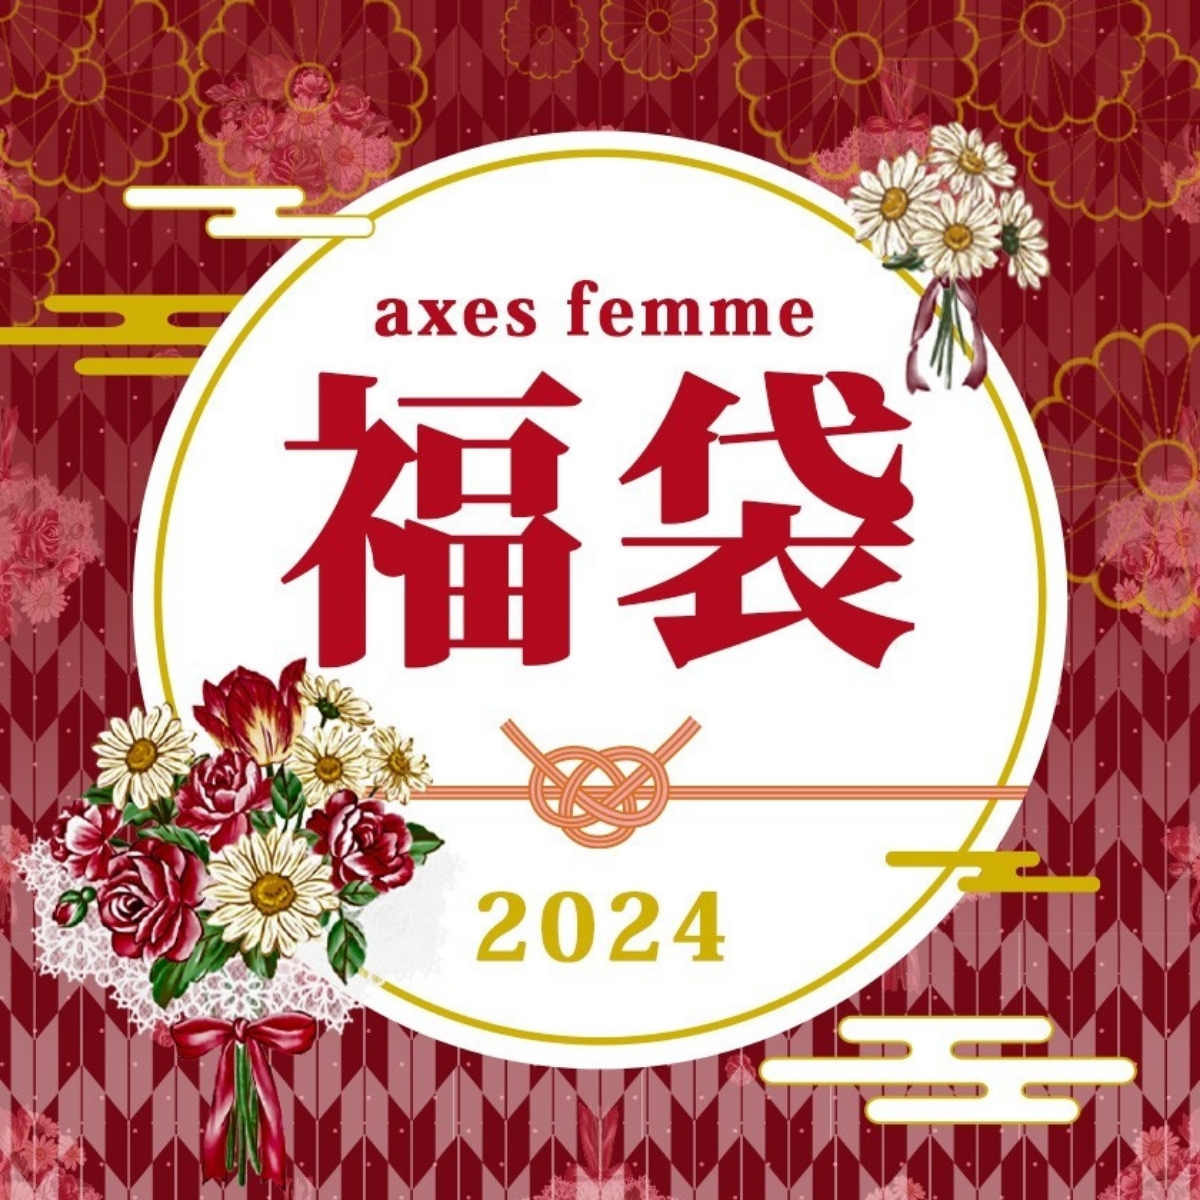 【予約受付中】2024年 axesfemme福袋